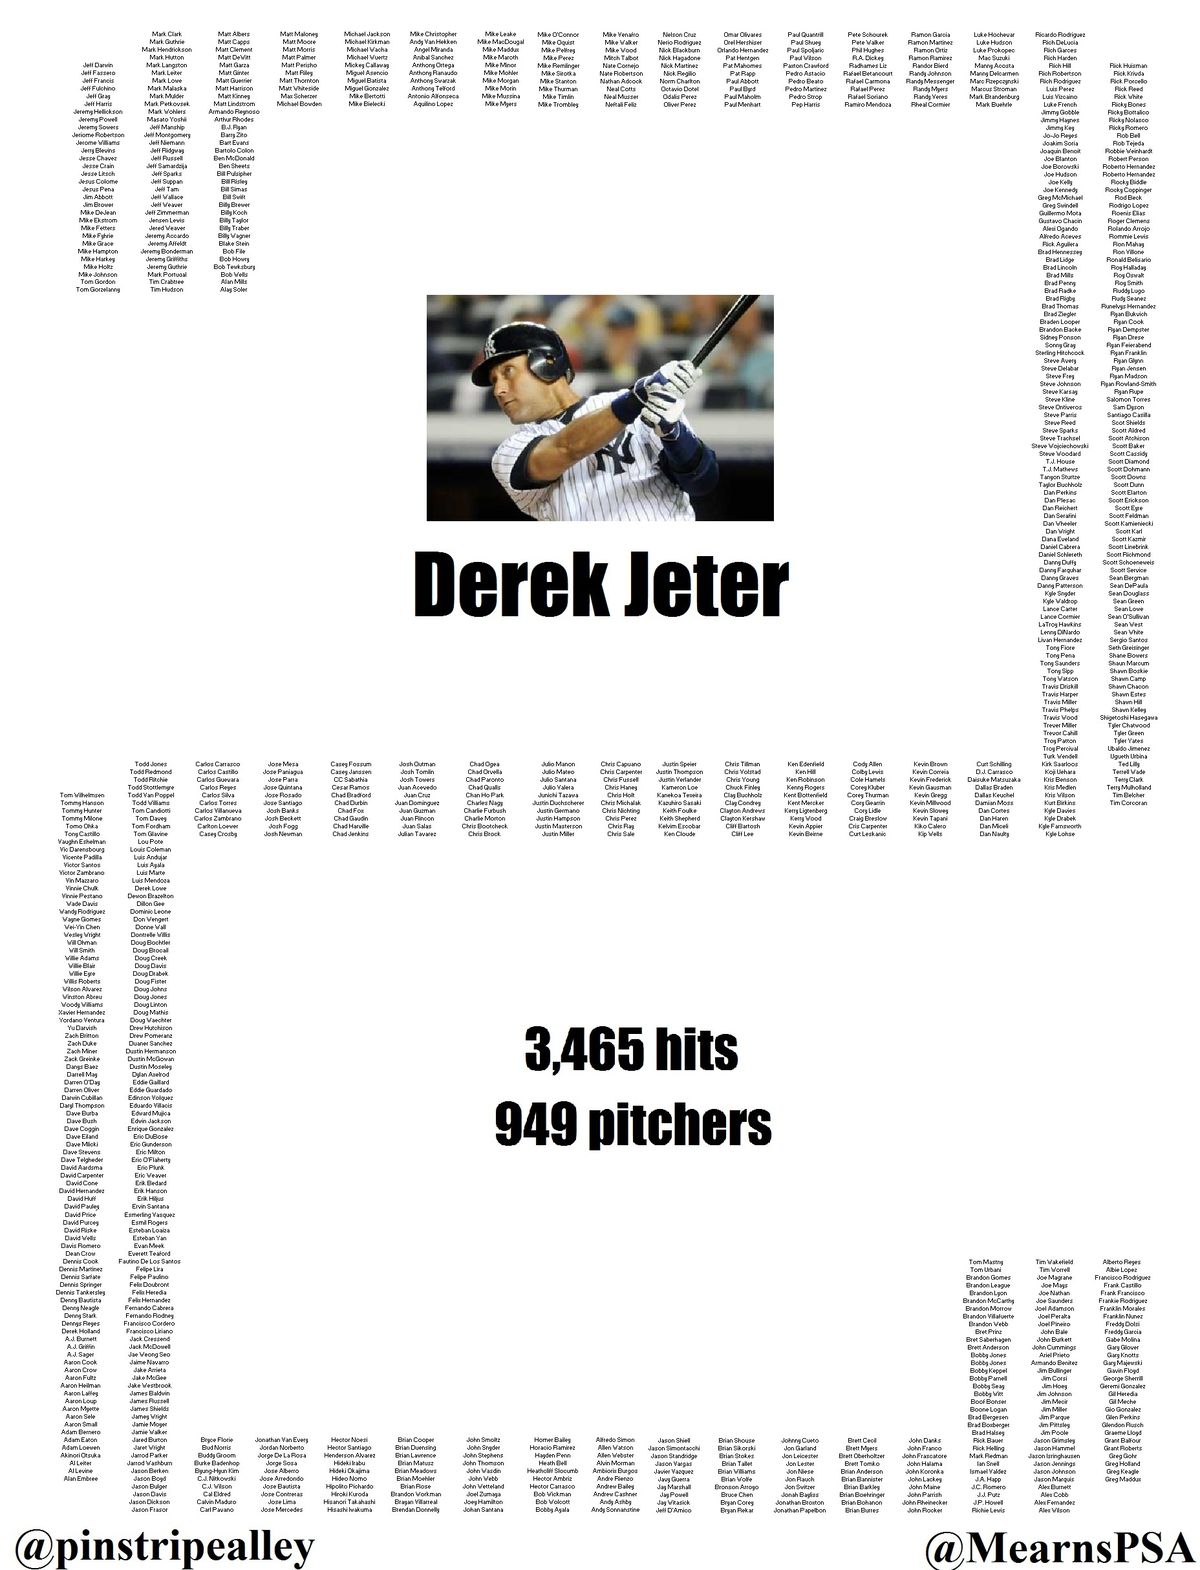 Jeter vs pitchers